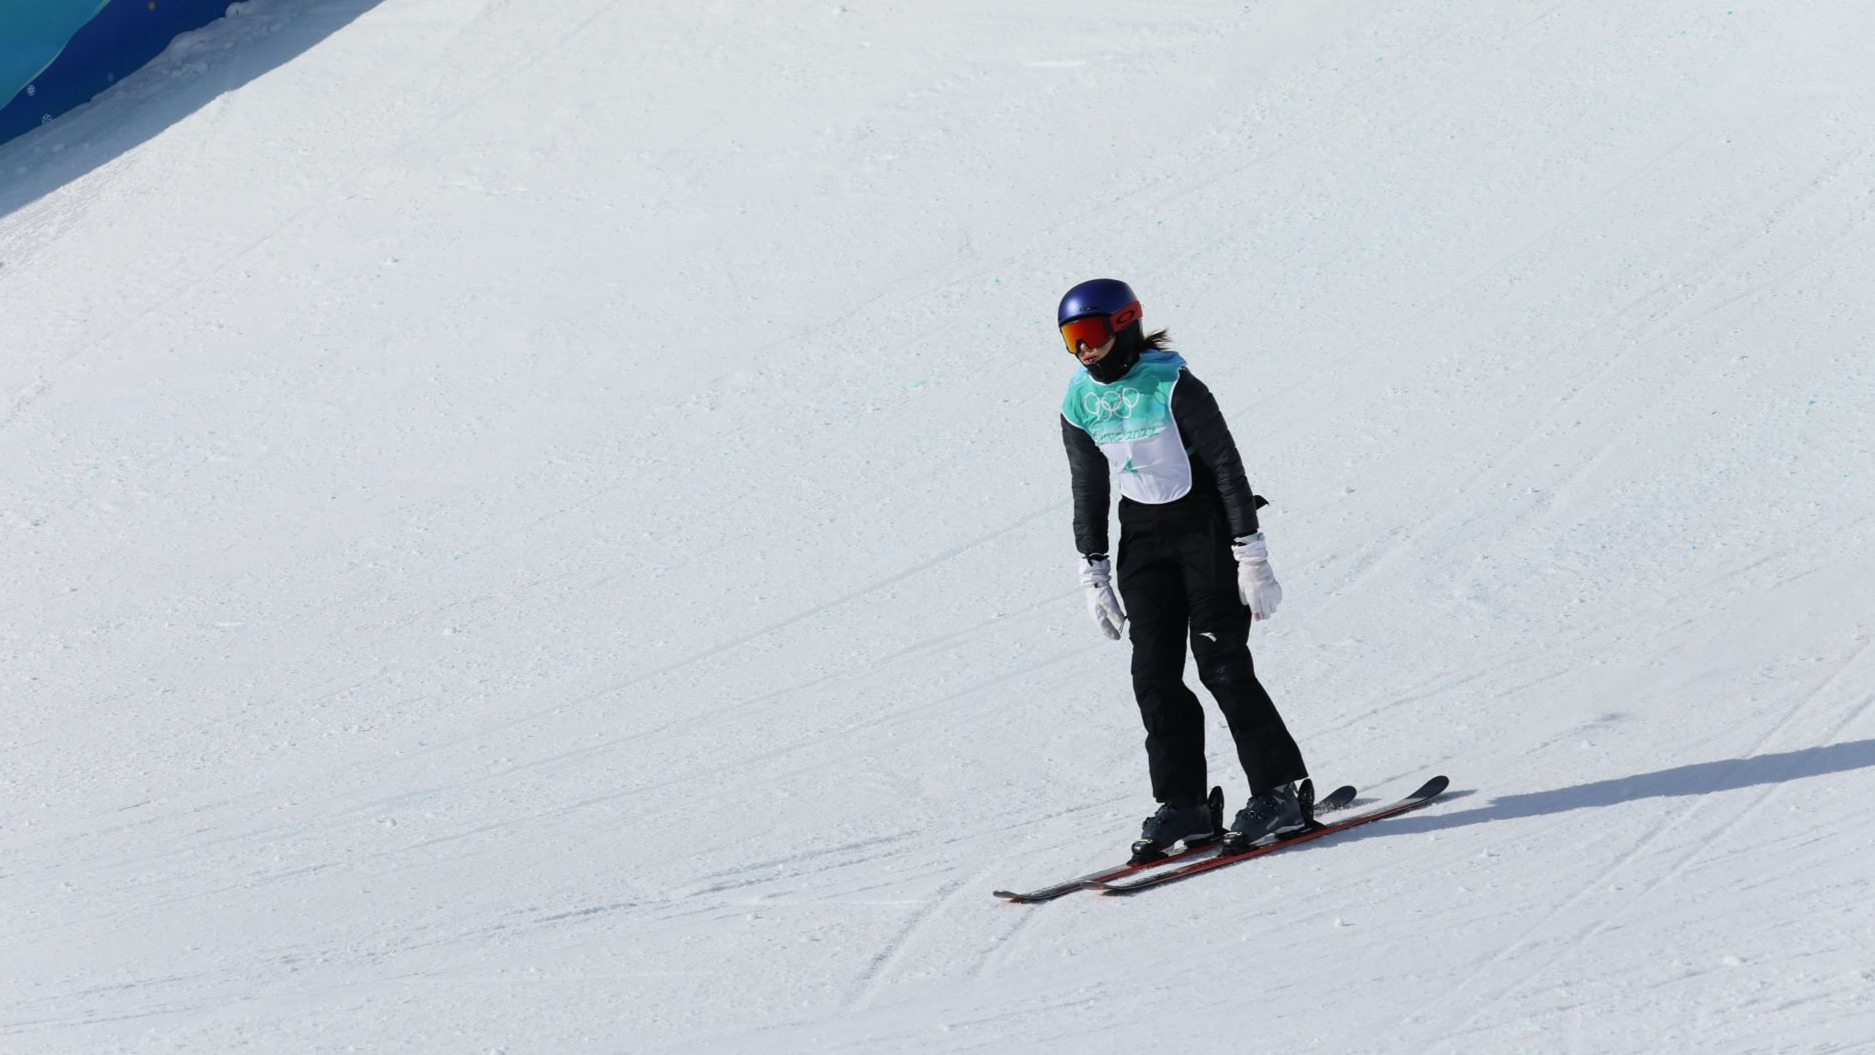 自由式滑雪女子大跳台資格賽 谷愛凌冬奧首秀順利進入決賽